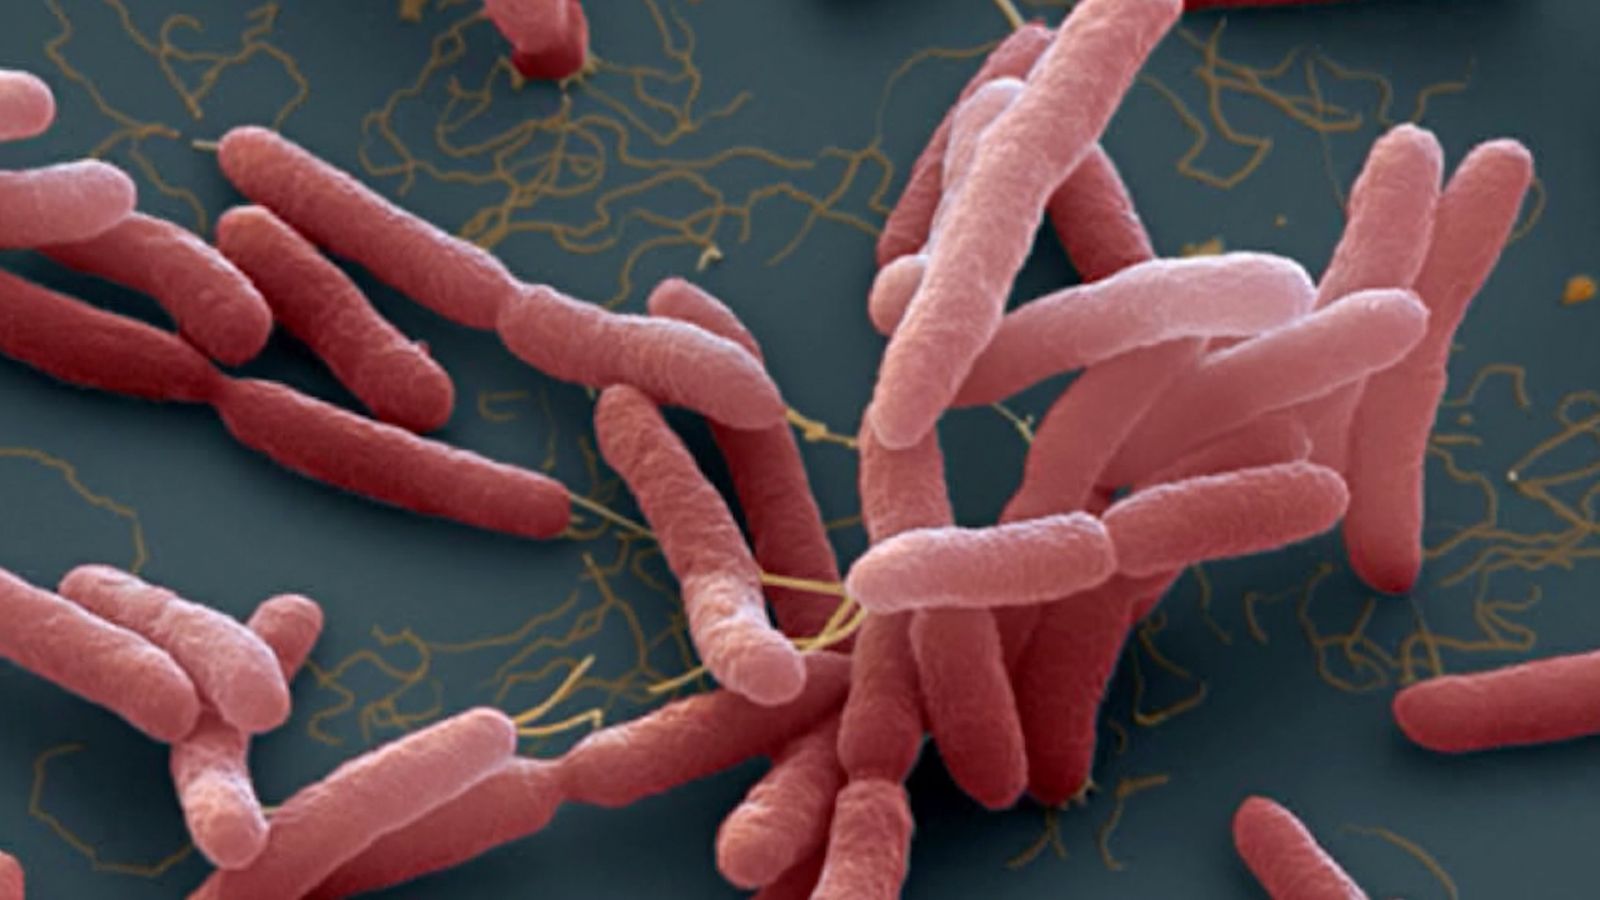 Whitmore - Vi khuẩn ăn thịt người nguy hiểm đến mức độ nào